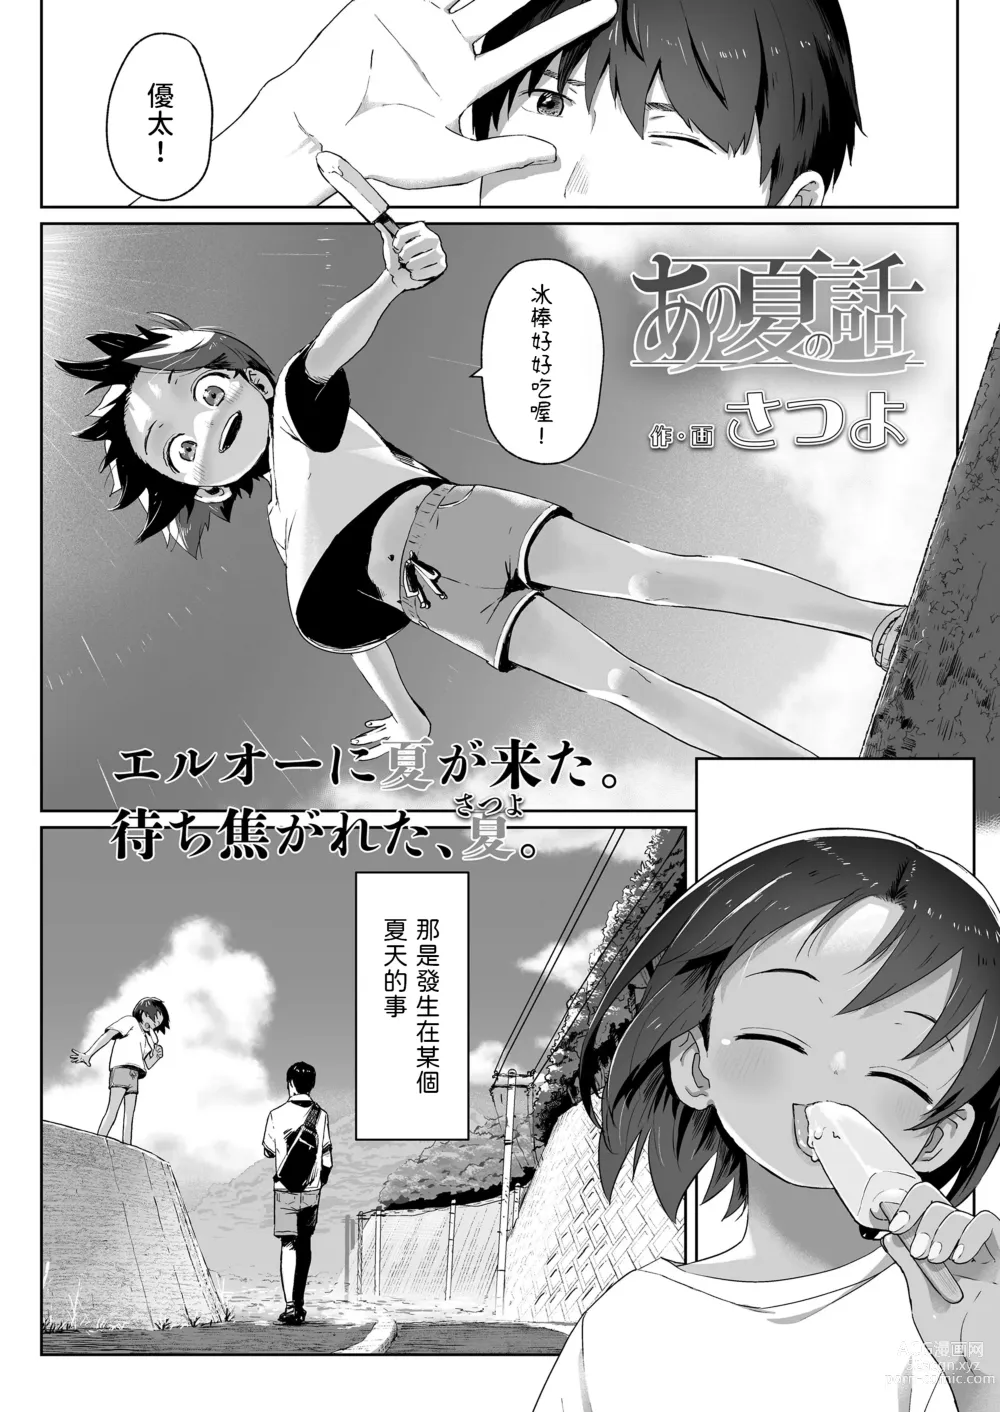 Page 1 of manga Ano Natsu no Hanashi